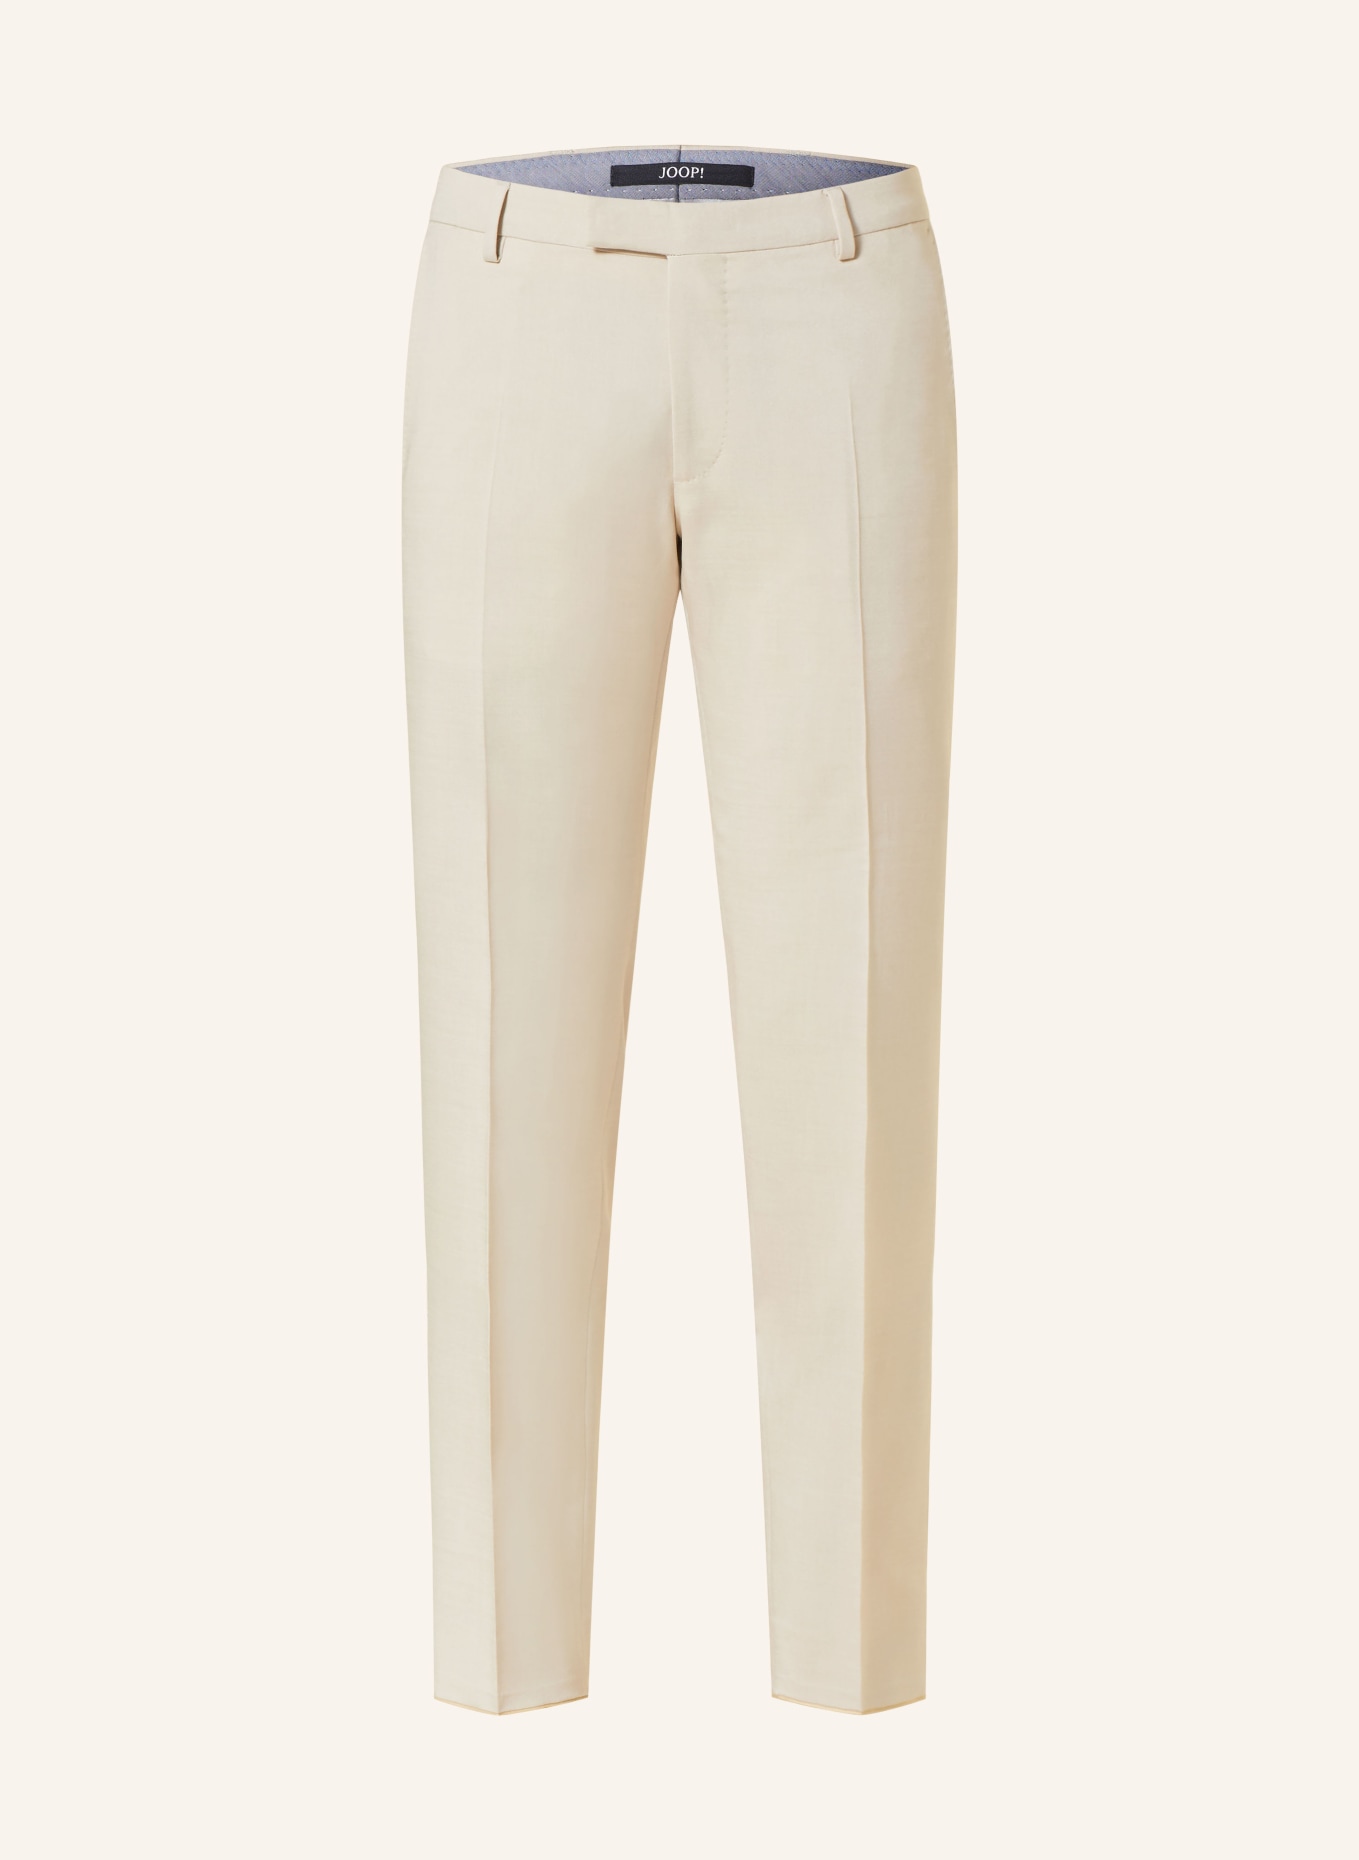 JOOP! Anzughose BLAYR Slim Fit, Farbe: 290 Open Beige                 290 (Bild 1)